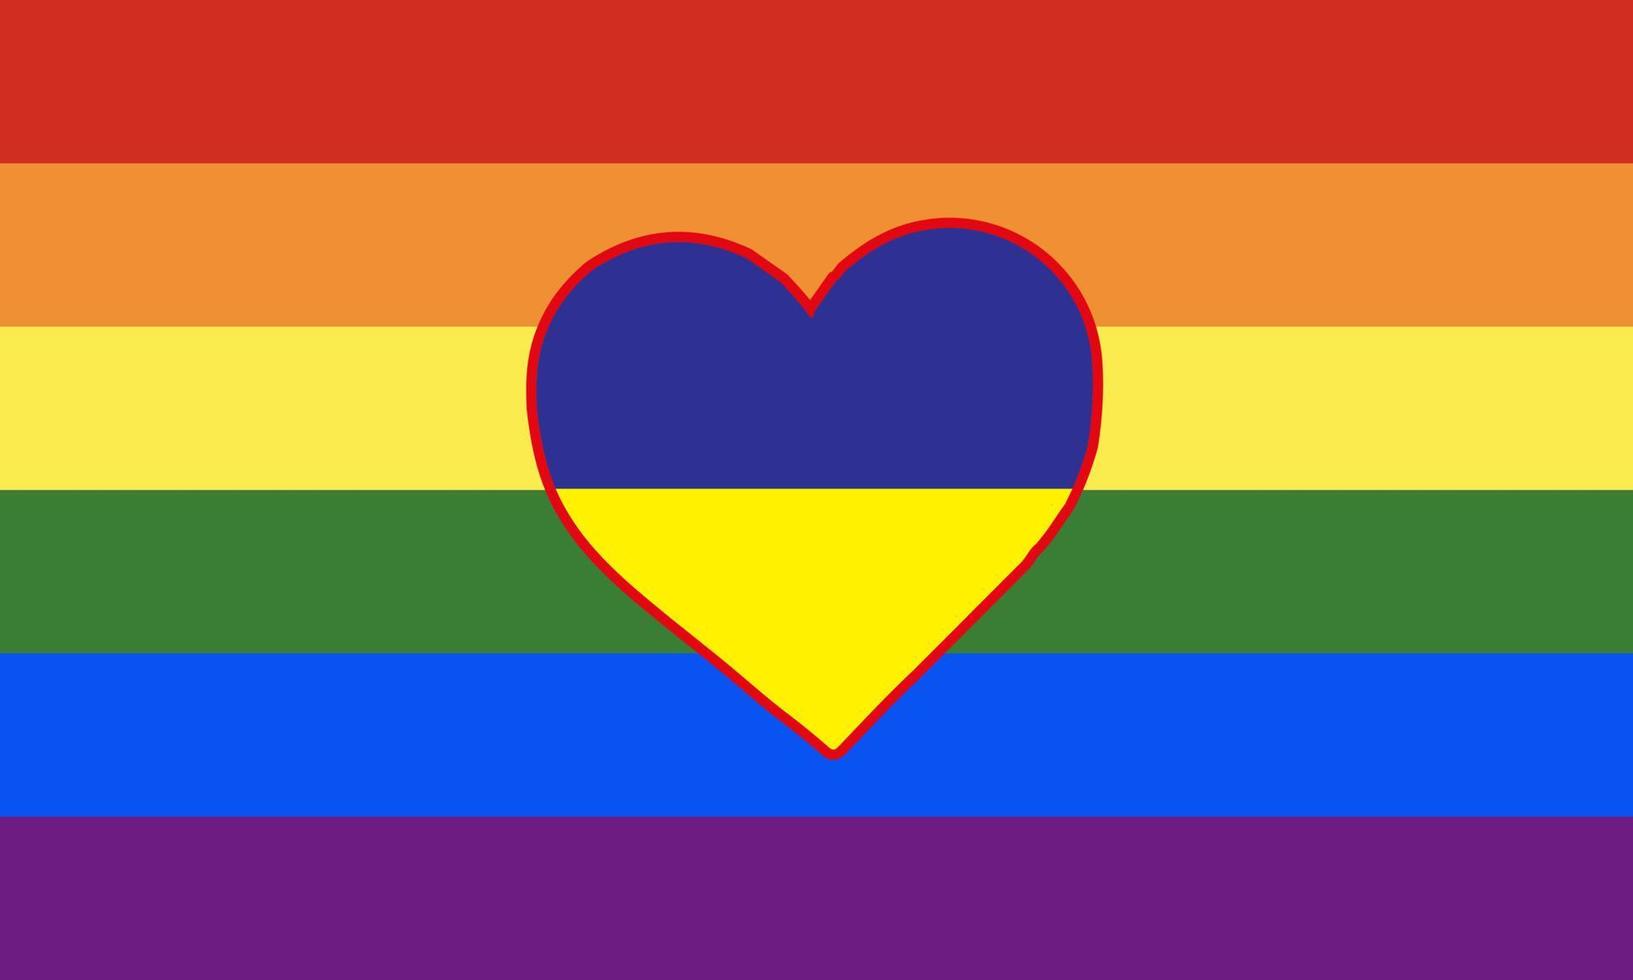 coração pintado nas cores da bandeira da comunidade lgbt na bandeira da ucrânia. ilustração em vetor de um coração de arco-íris em um fundo azul-amarelo.